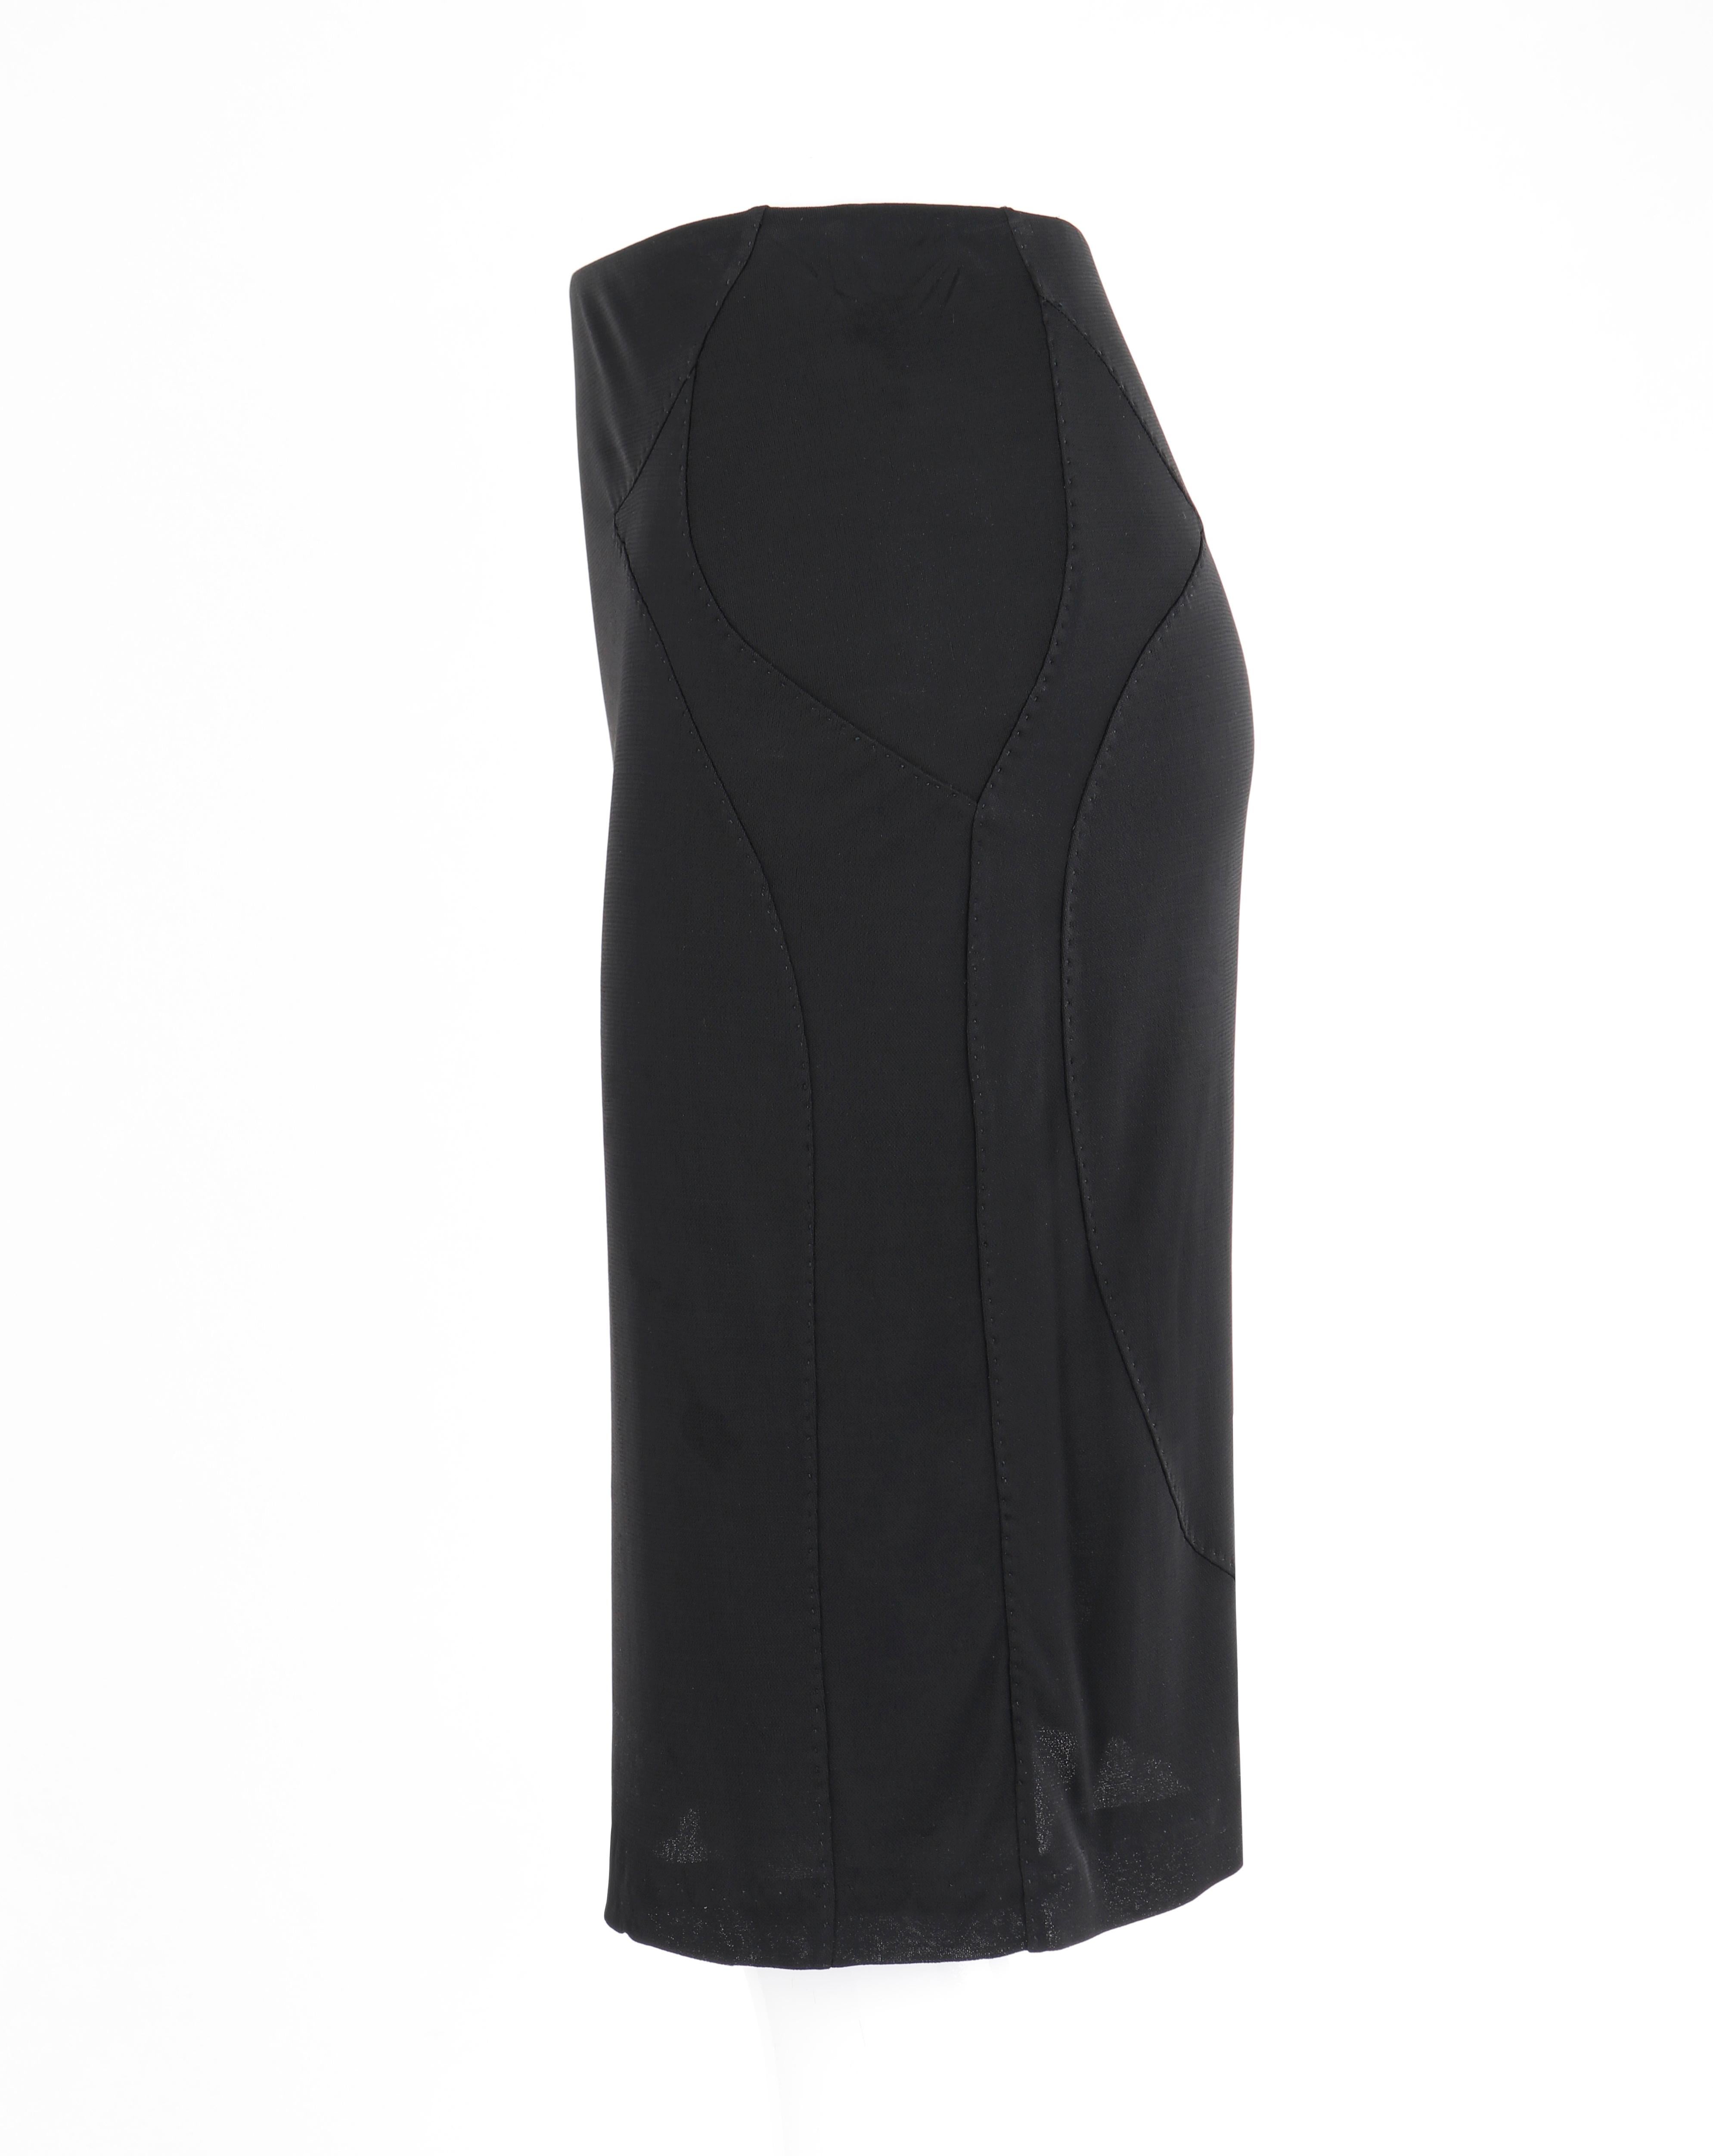 YVES SAINT LAURENT Tom Ford S/S 2003 2 Pc Black Top Skirt Dress Set YSL For Sale 3